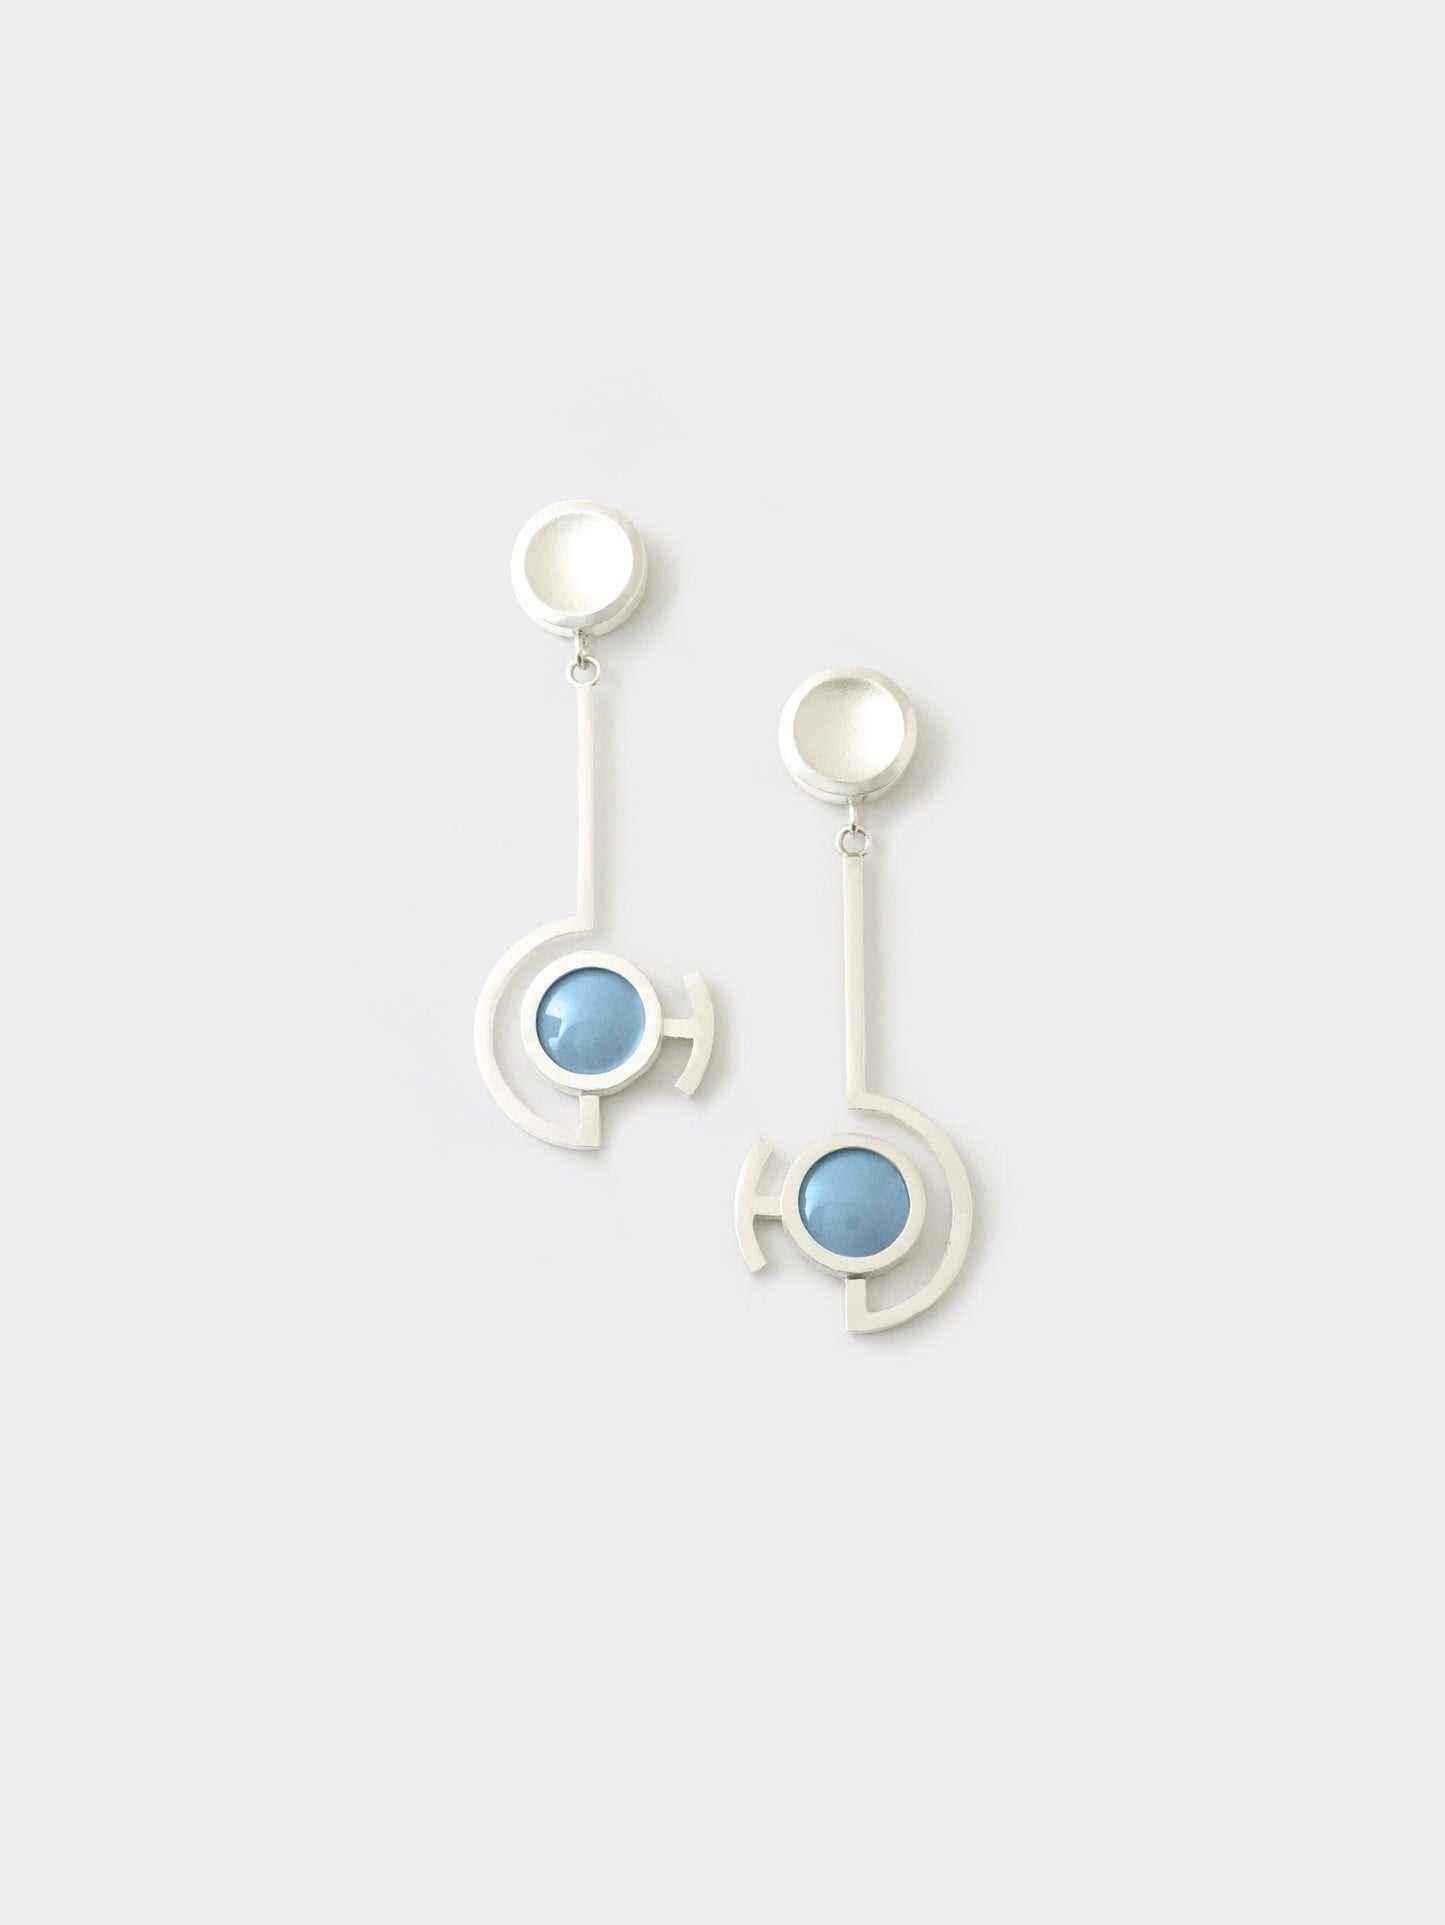 Vitreous Enamel Dangle Earring | Contemporary Earring | Geometric Earring |  Sterling Silver Earring | Modern Atlantic Blue Dainty Earring